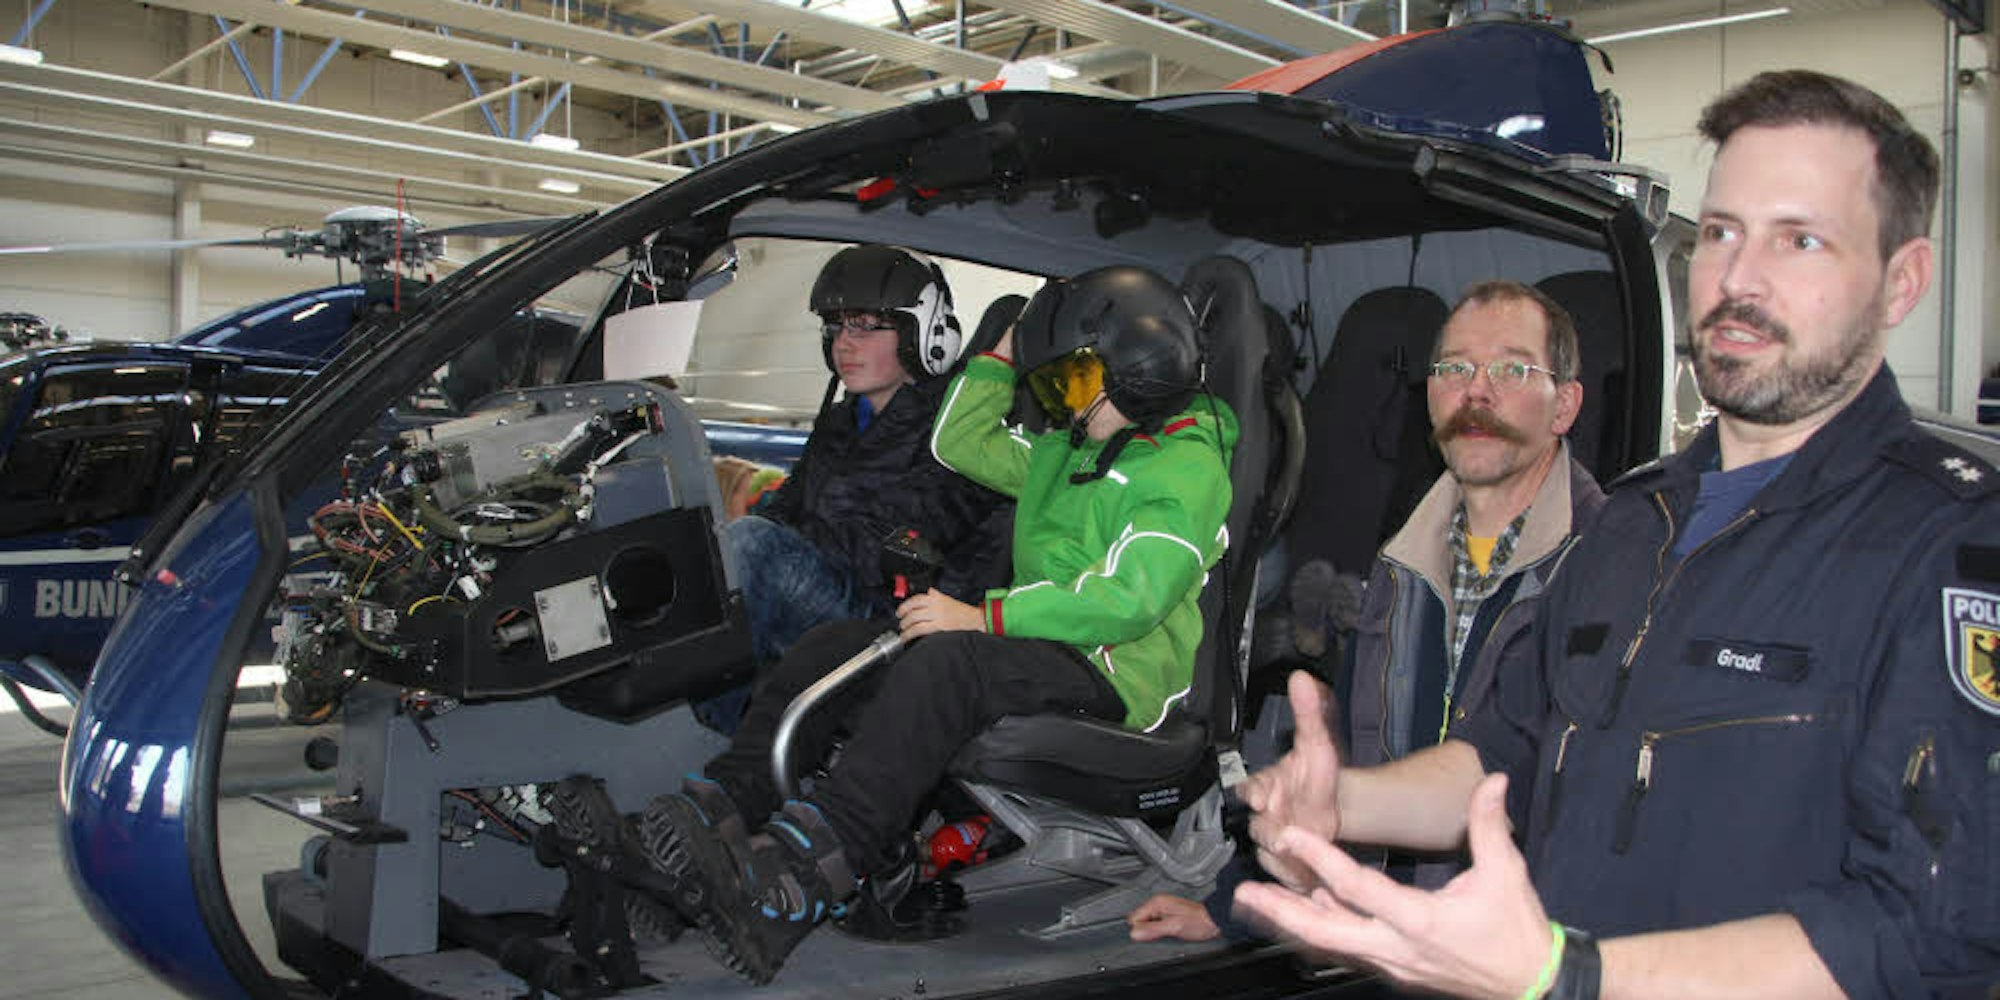 Polizeioberkommissar Christoph Gradl erklärte den Besuchern, wie aus Anfängern erfahrene Piloten werden.